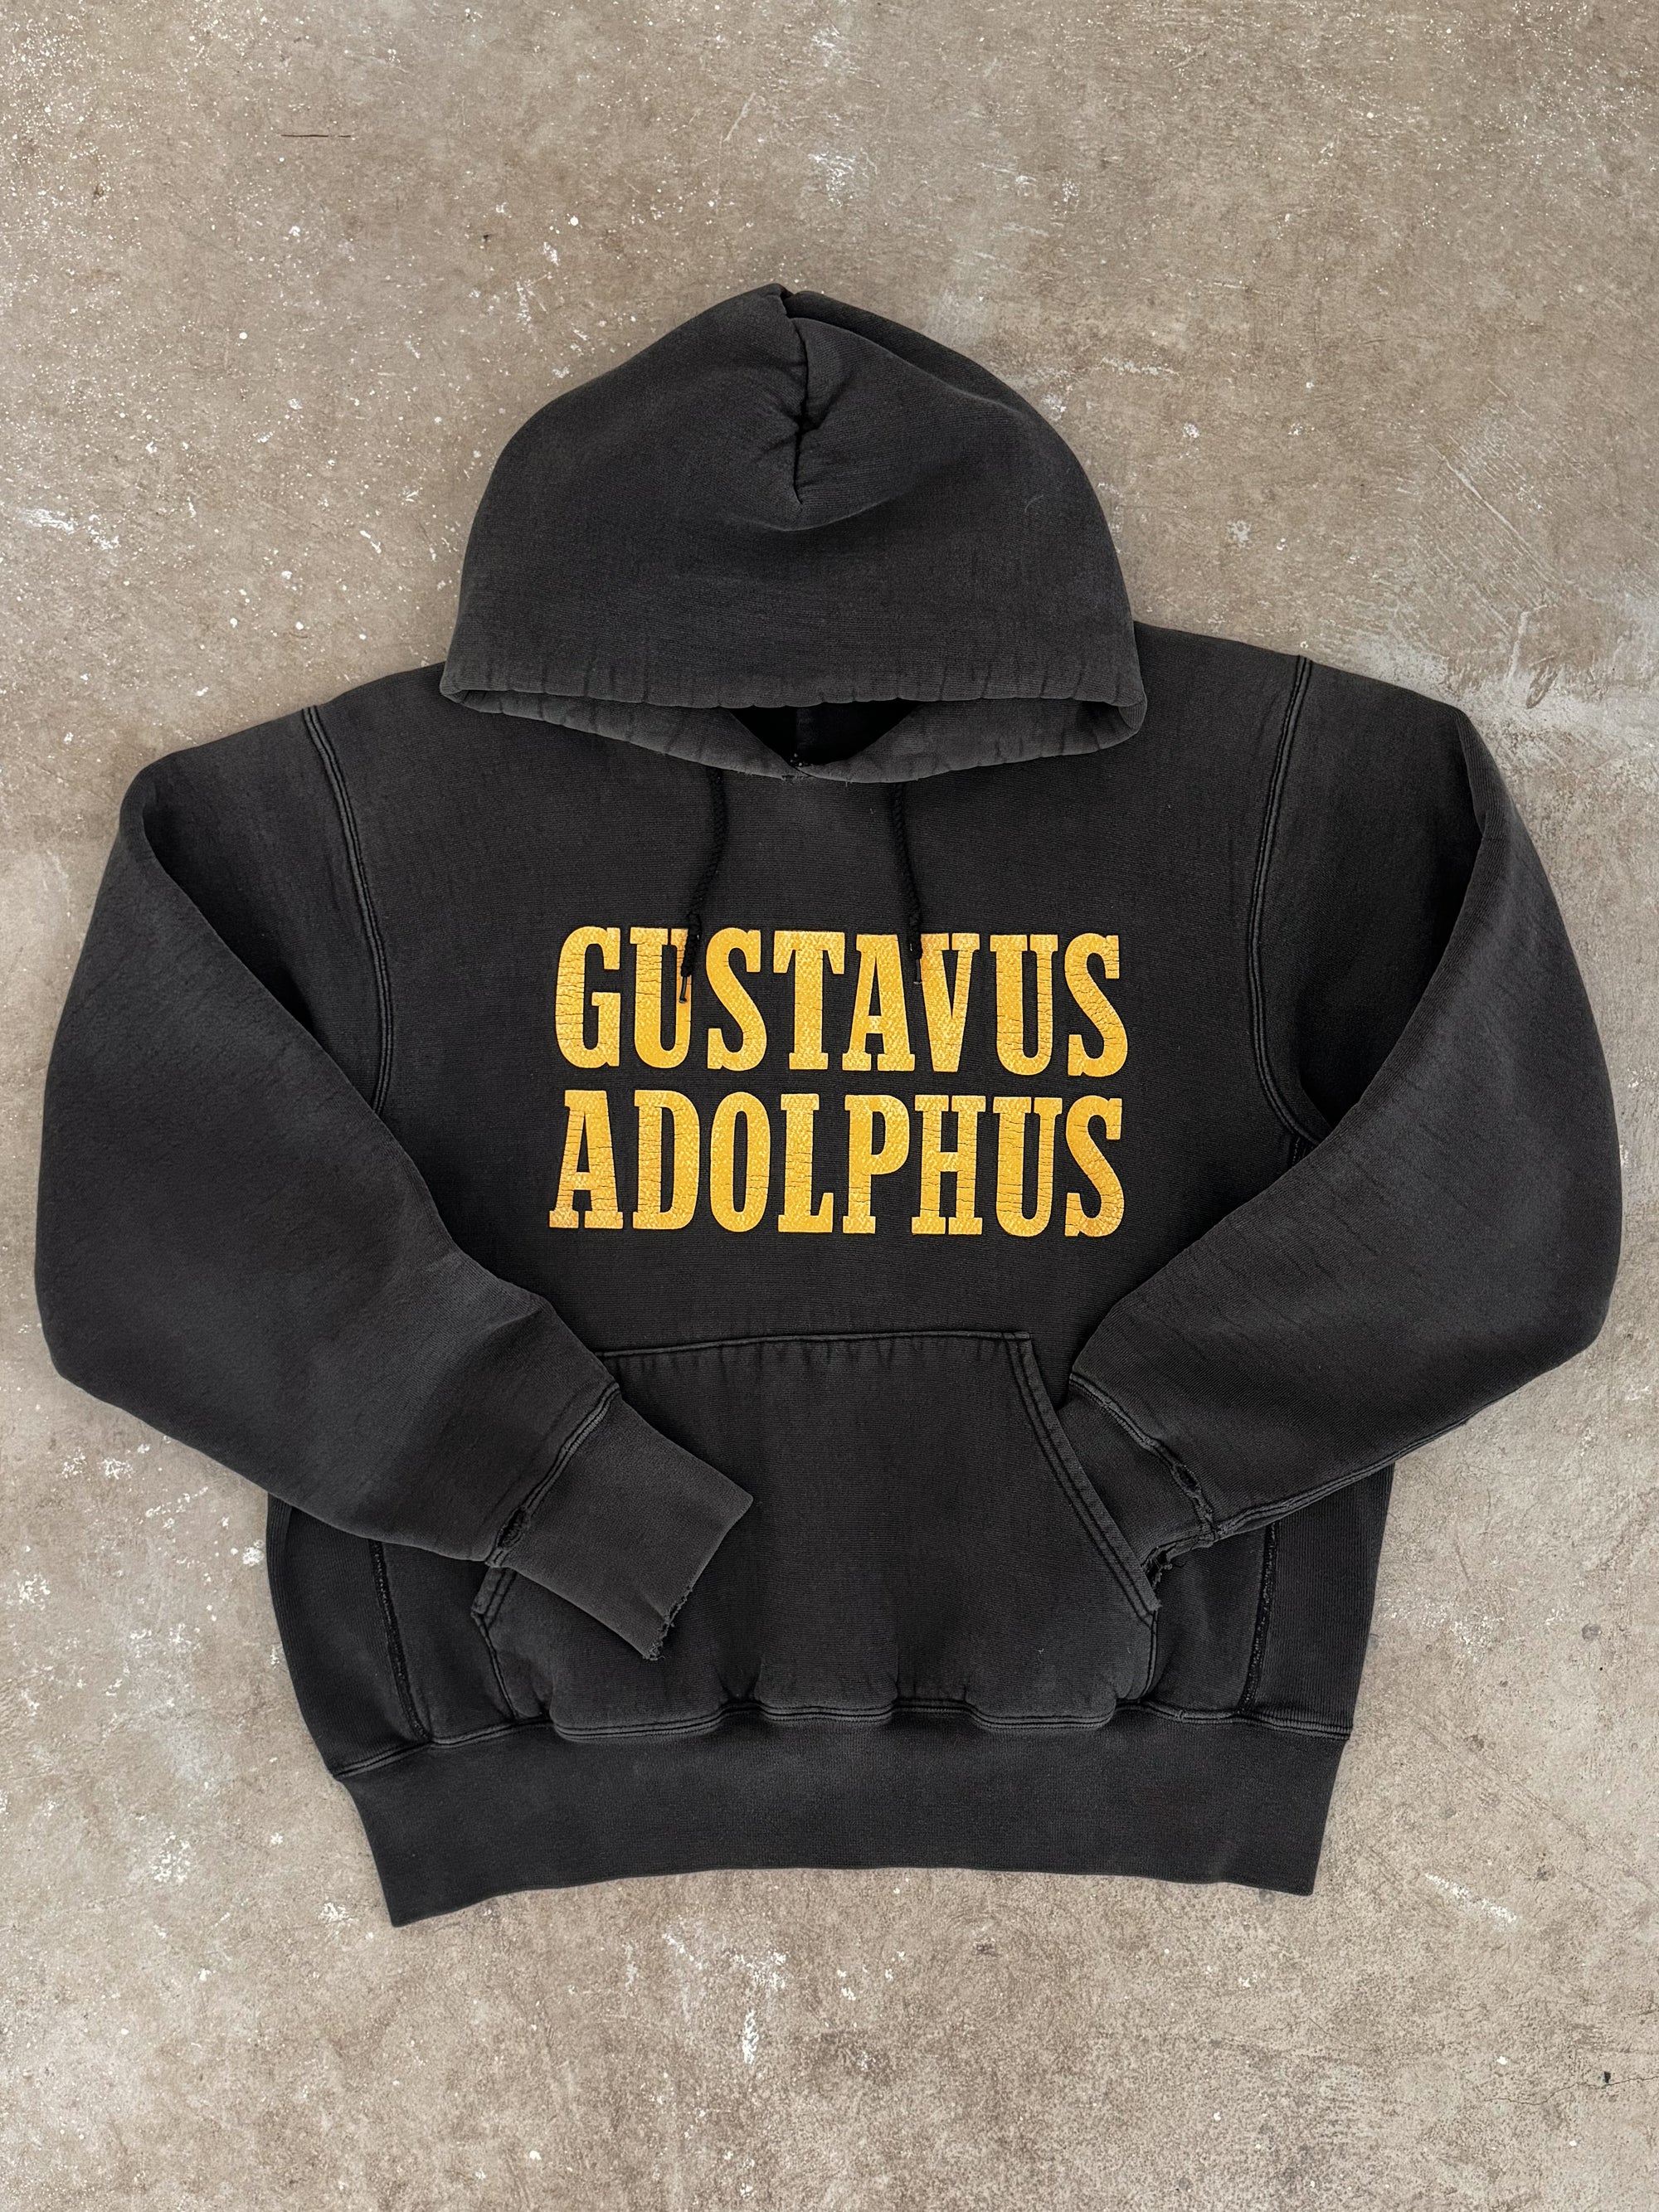 1990s "Gustavus Adolphus" Hoodie (M/L)